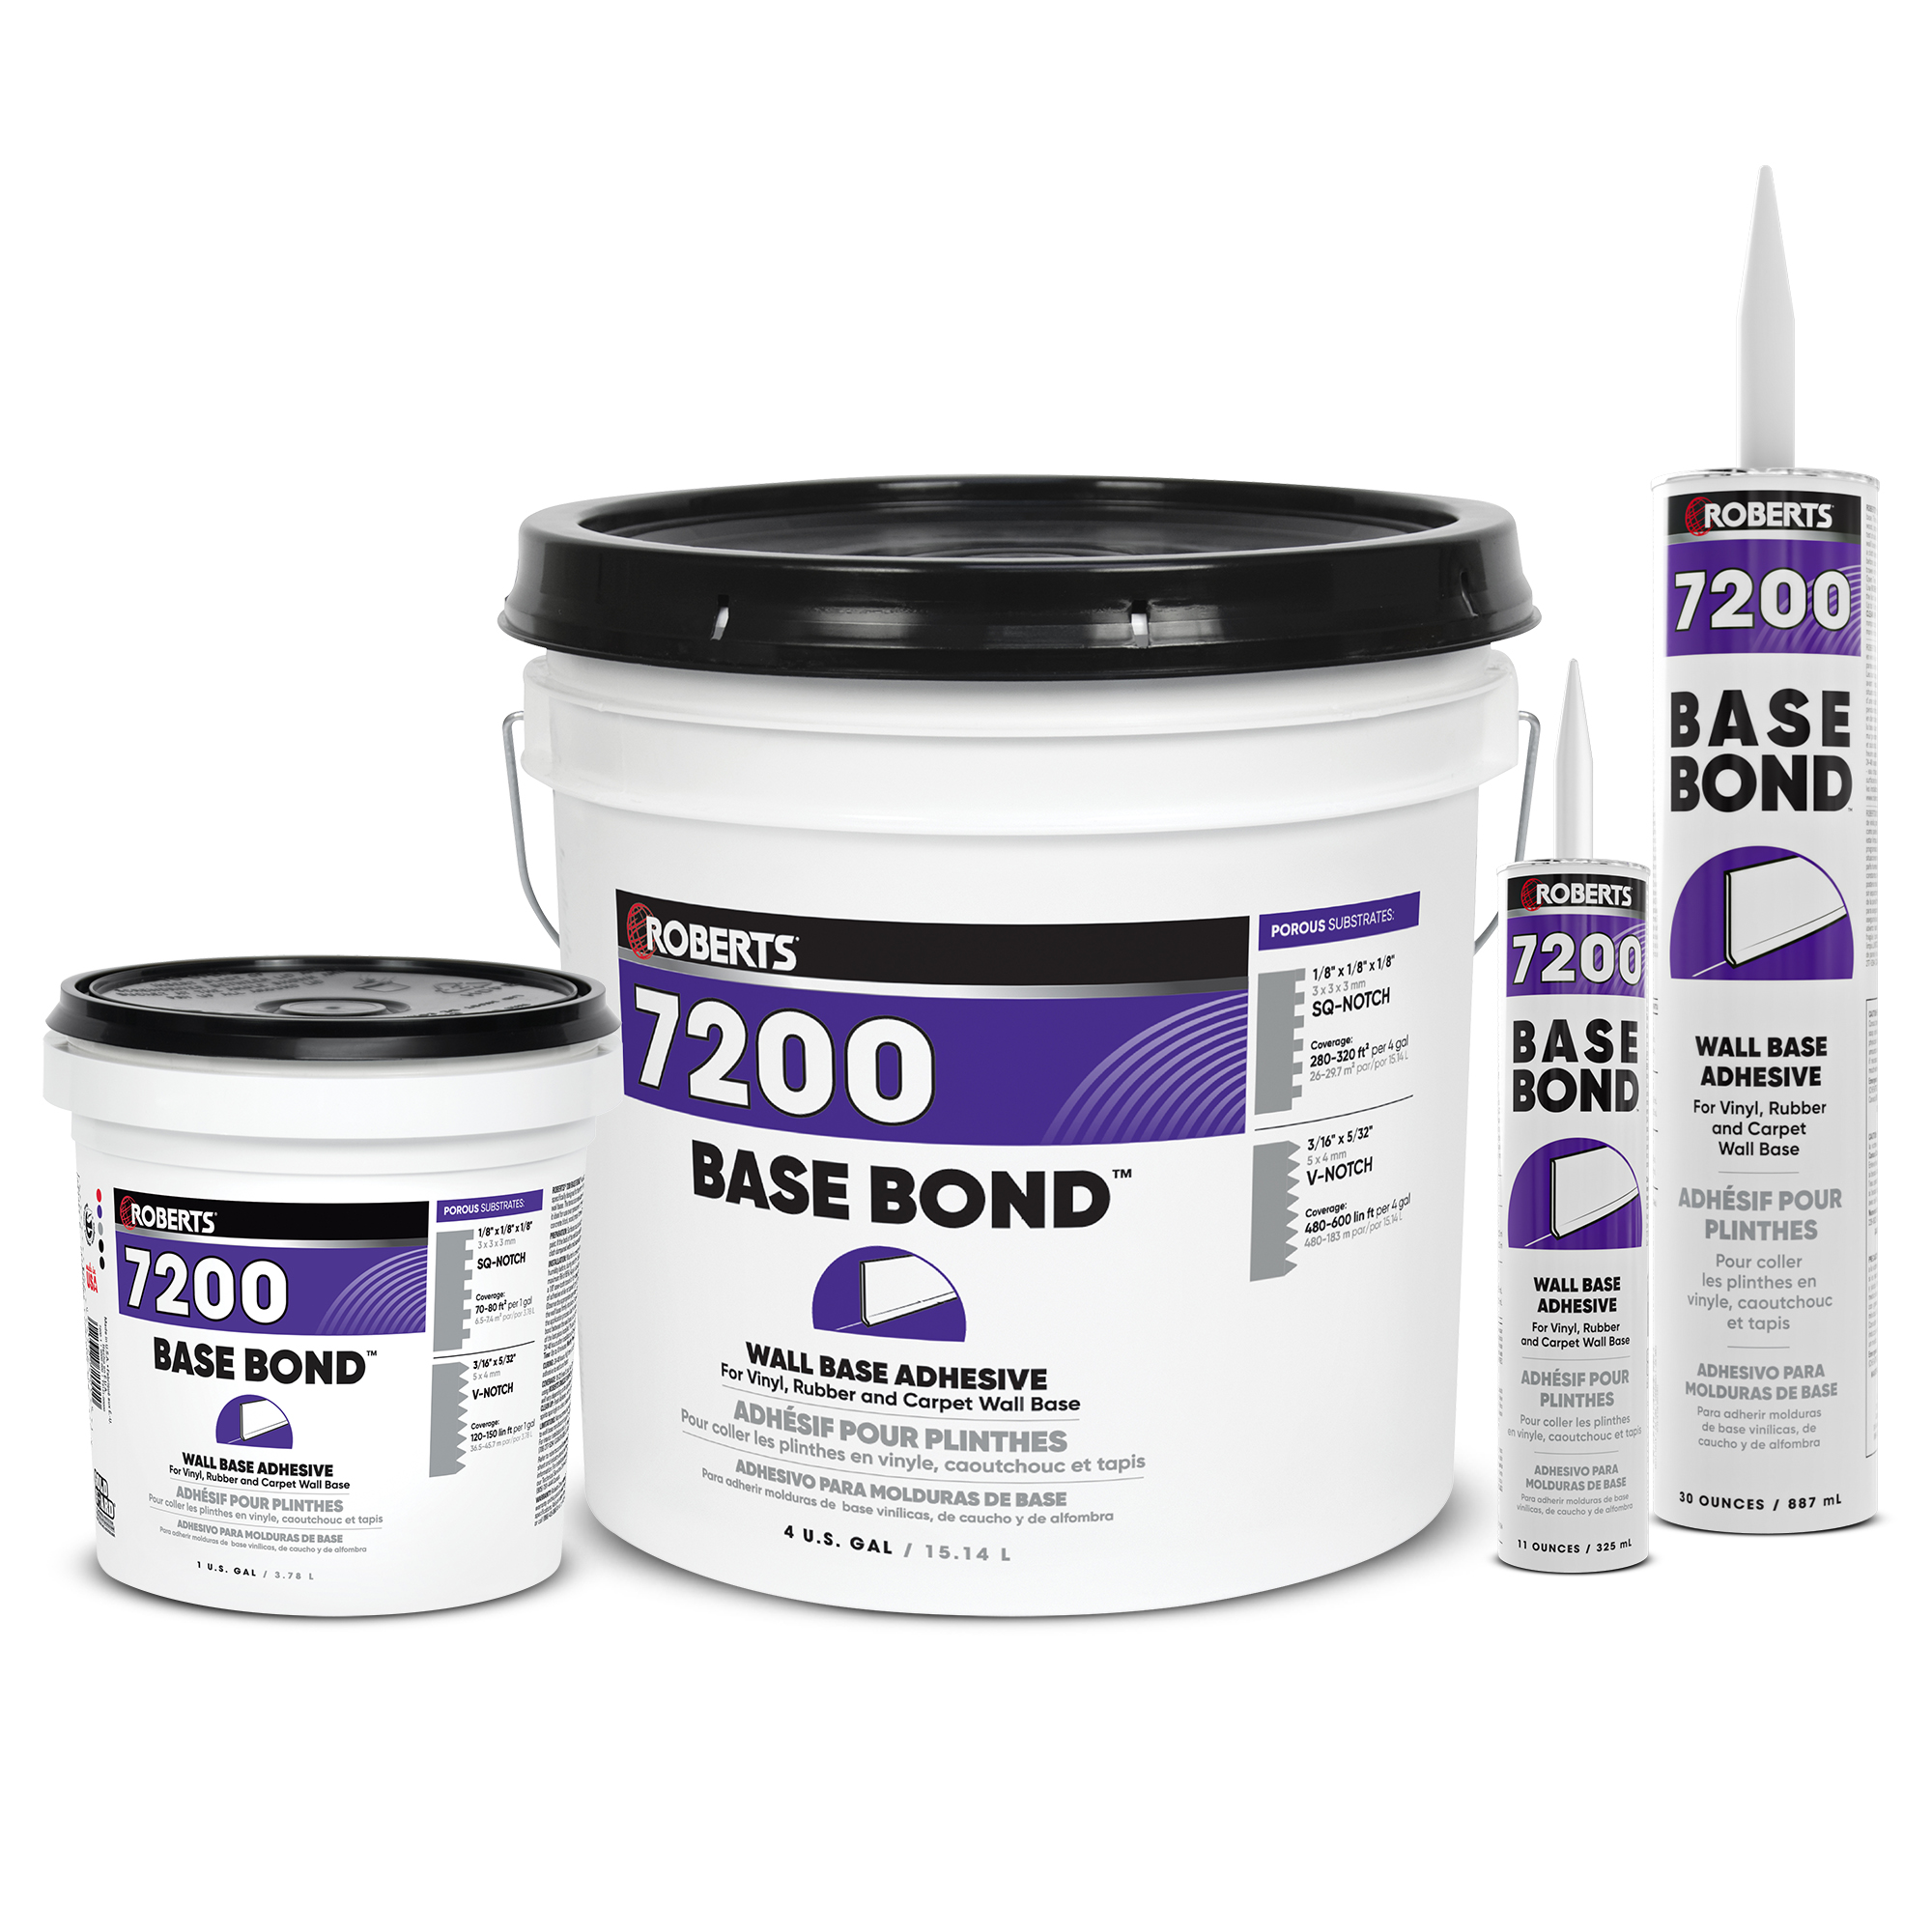 BASE BOND Wall Base Adhesive